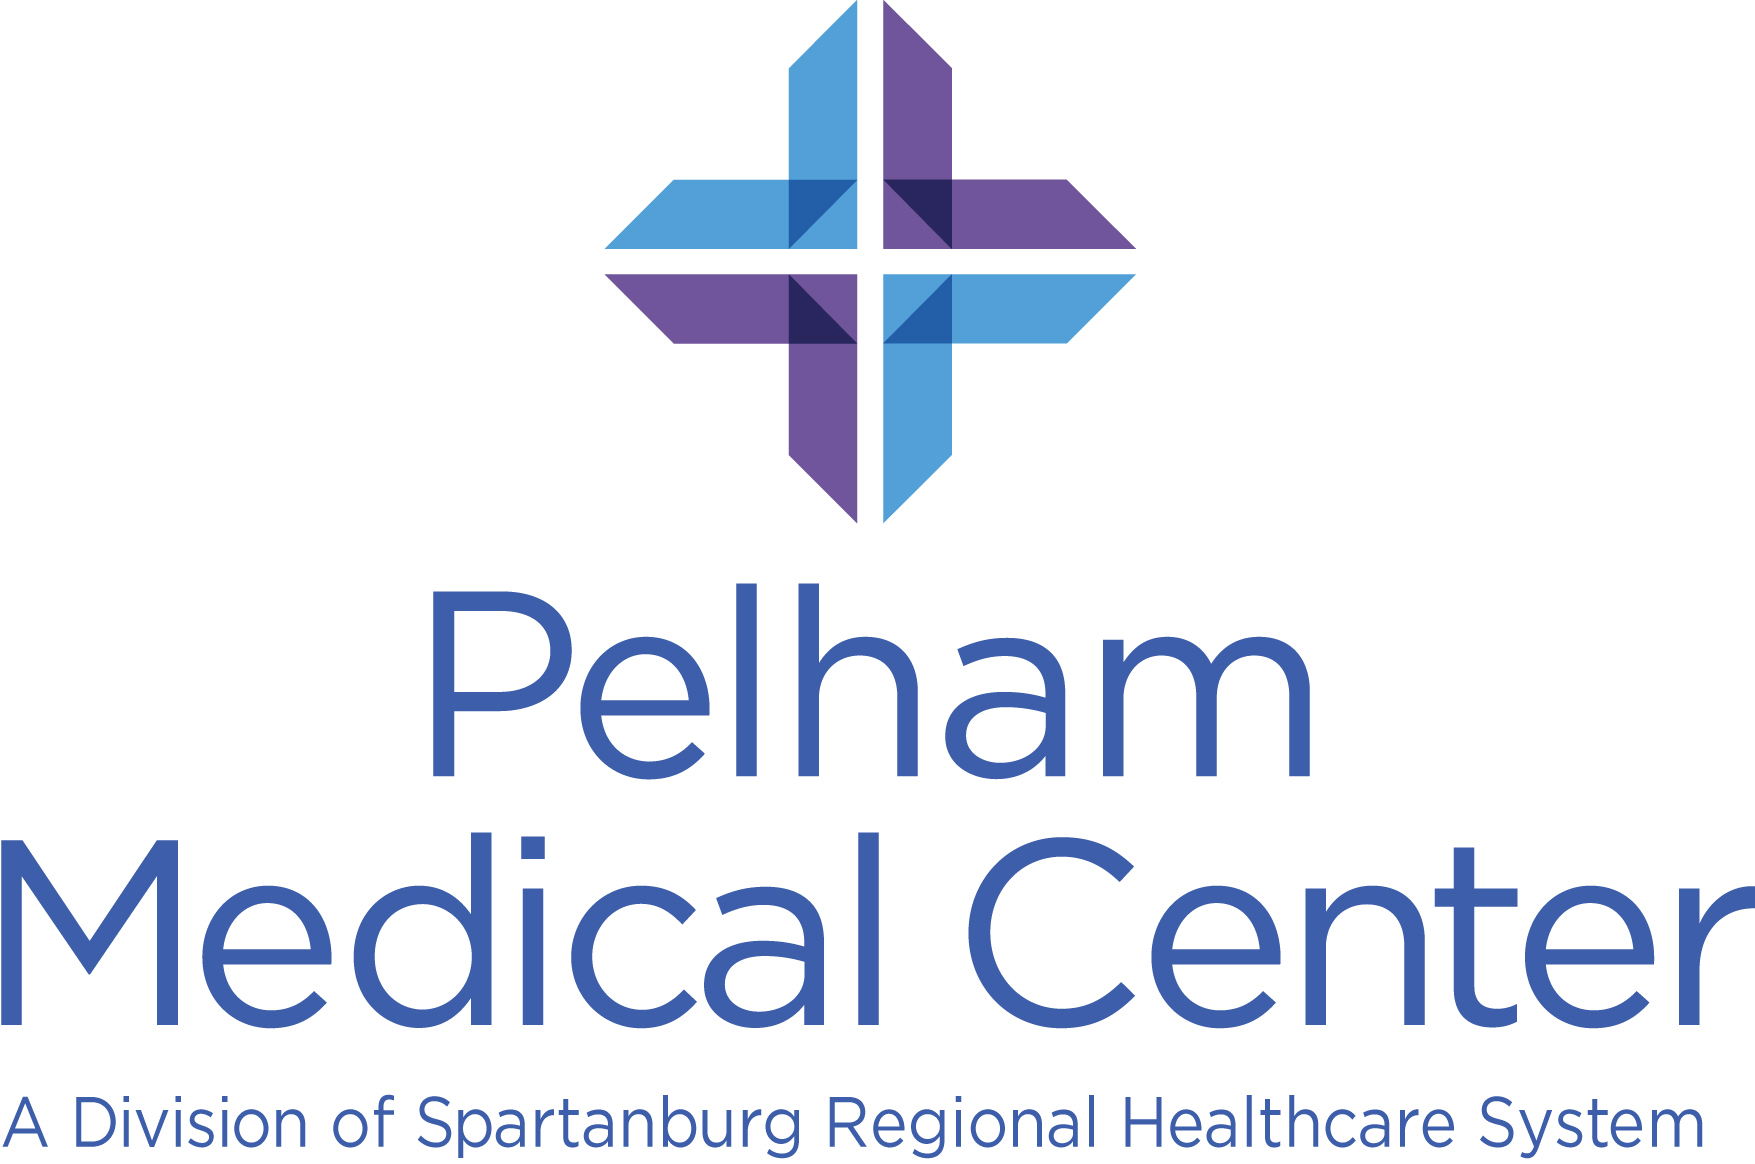 Pelham Medical Center